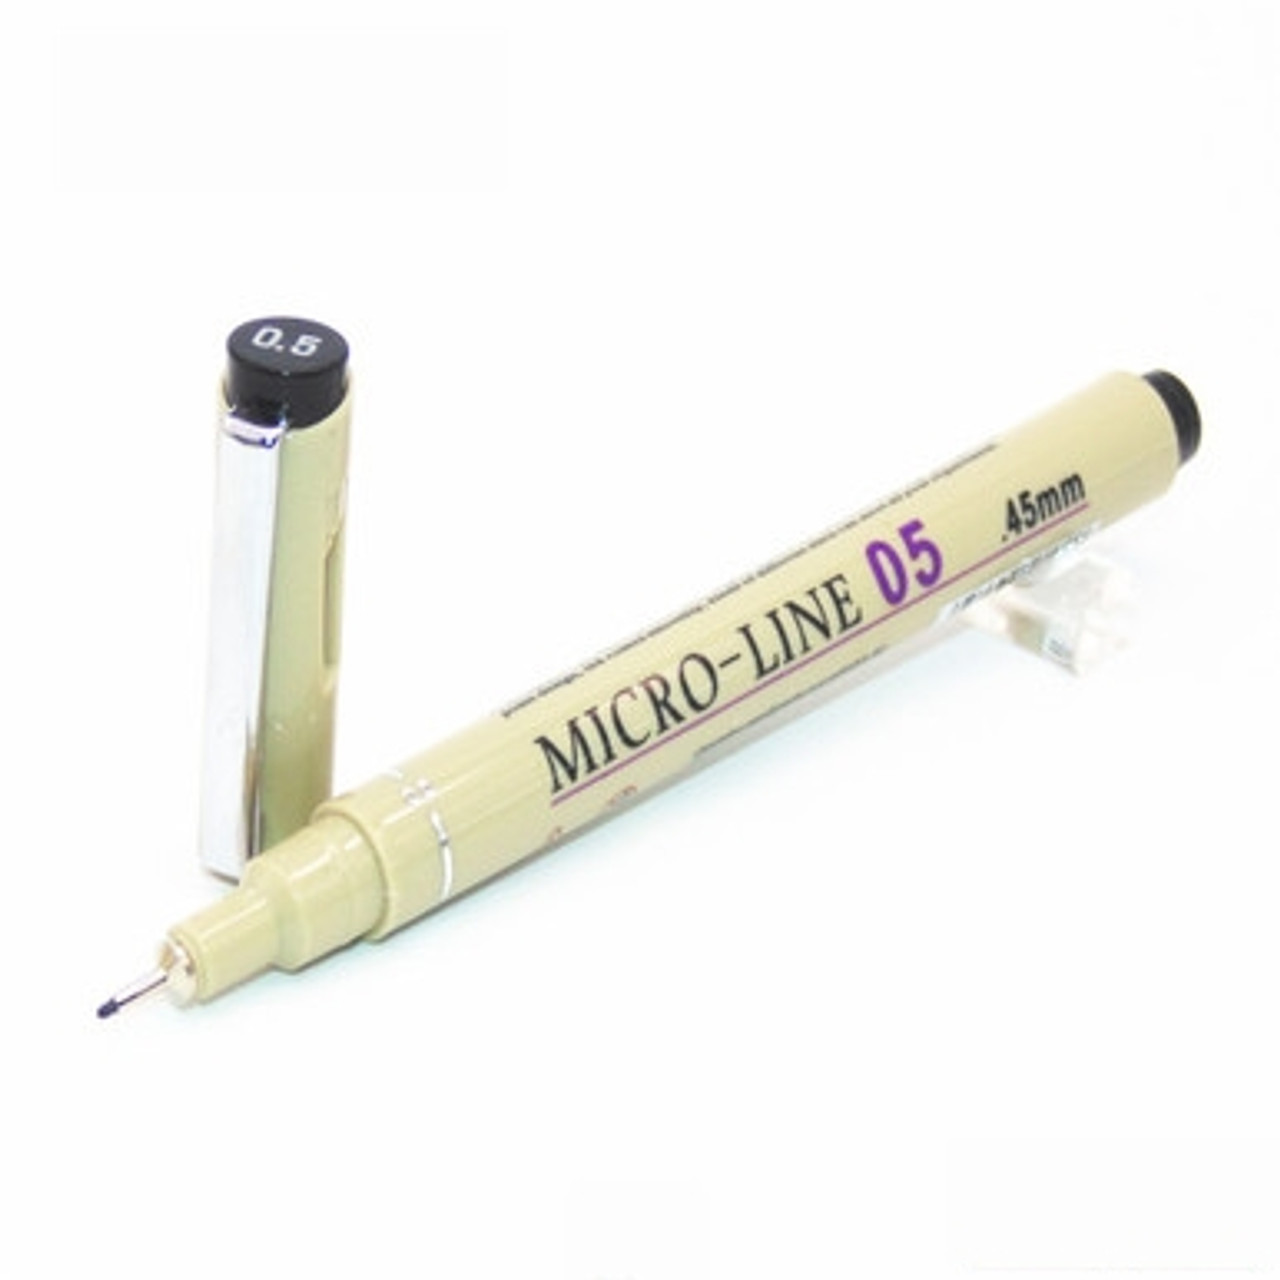 Fineliner - Fineliner Marker pen - Extra Fine Tip